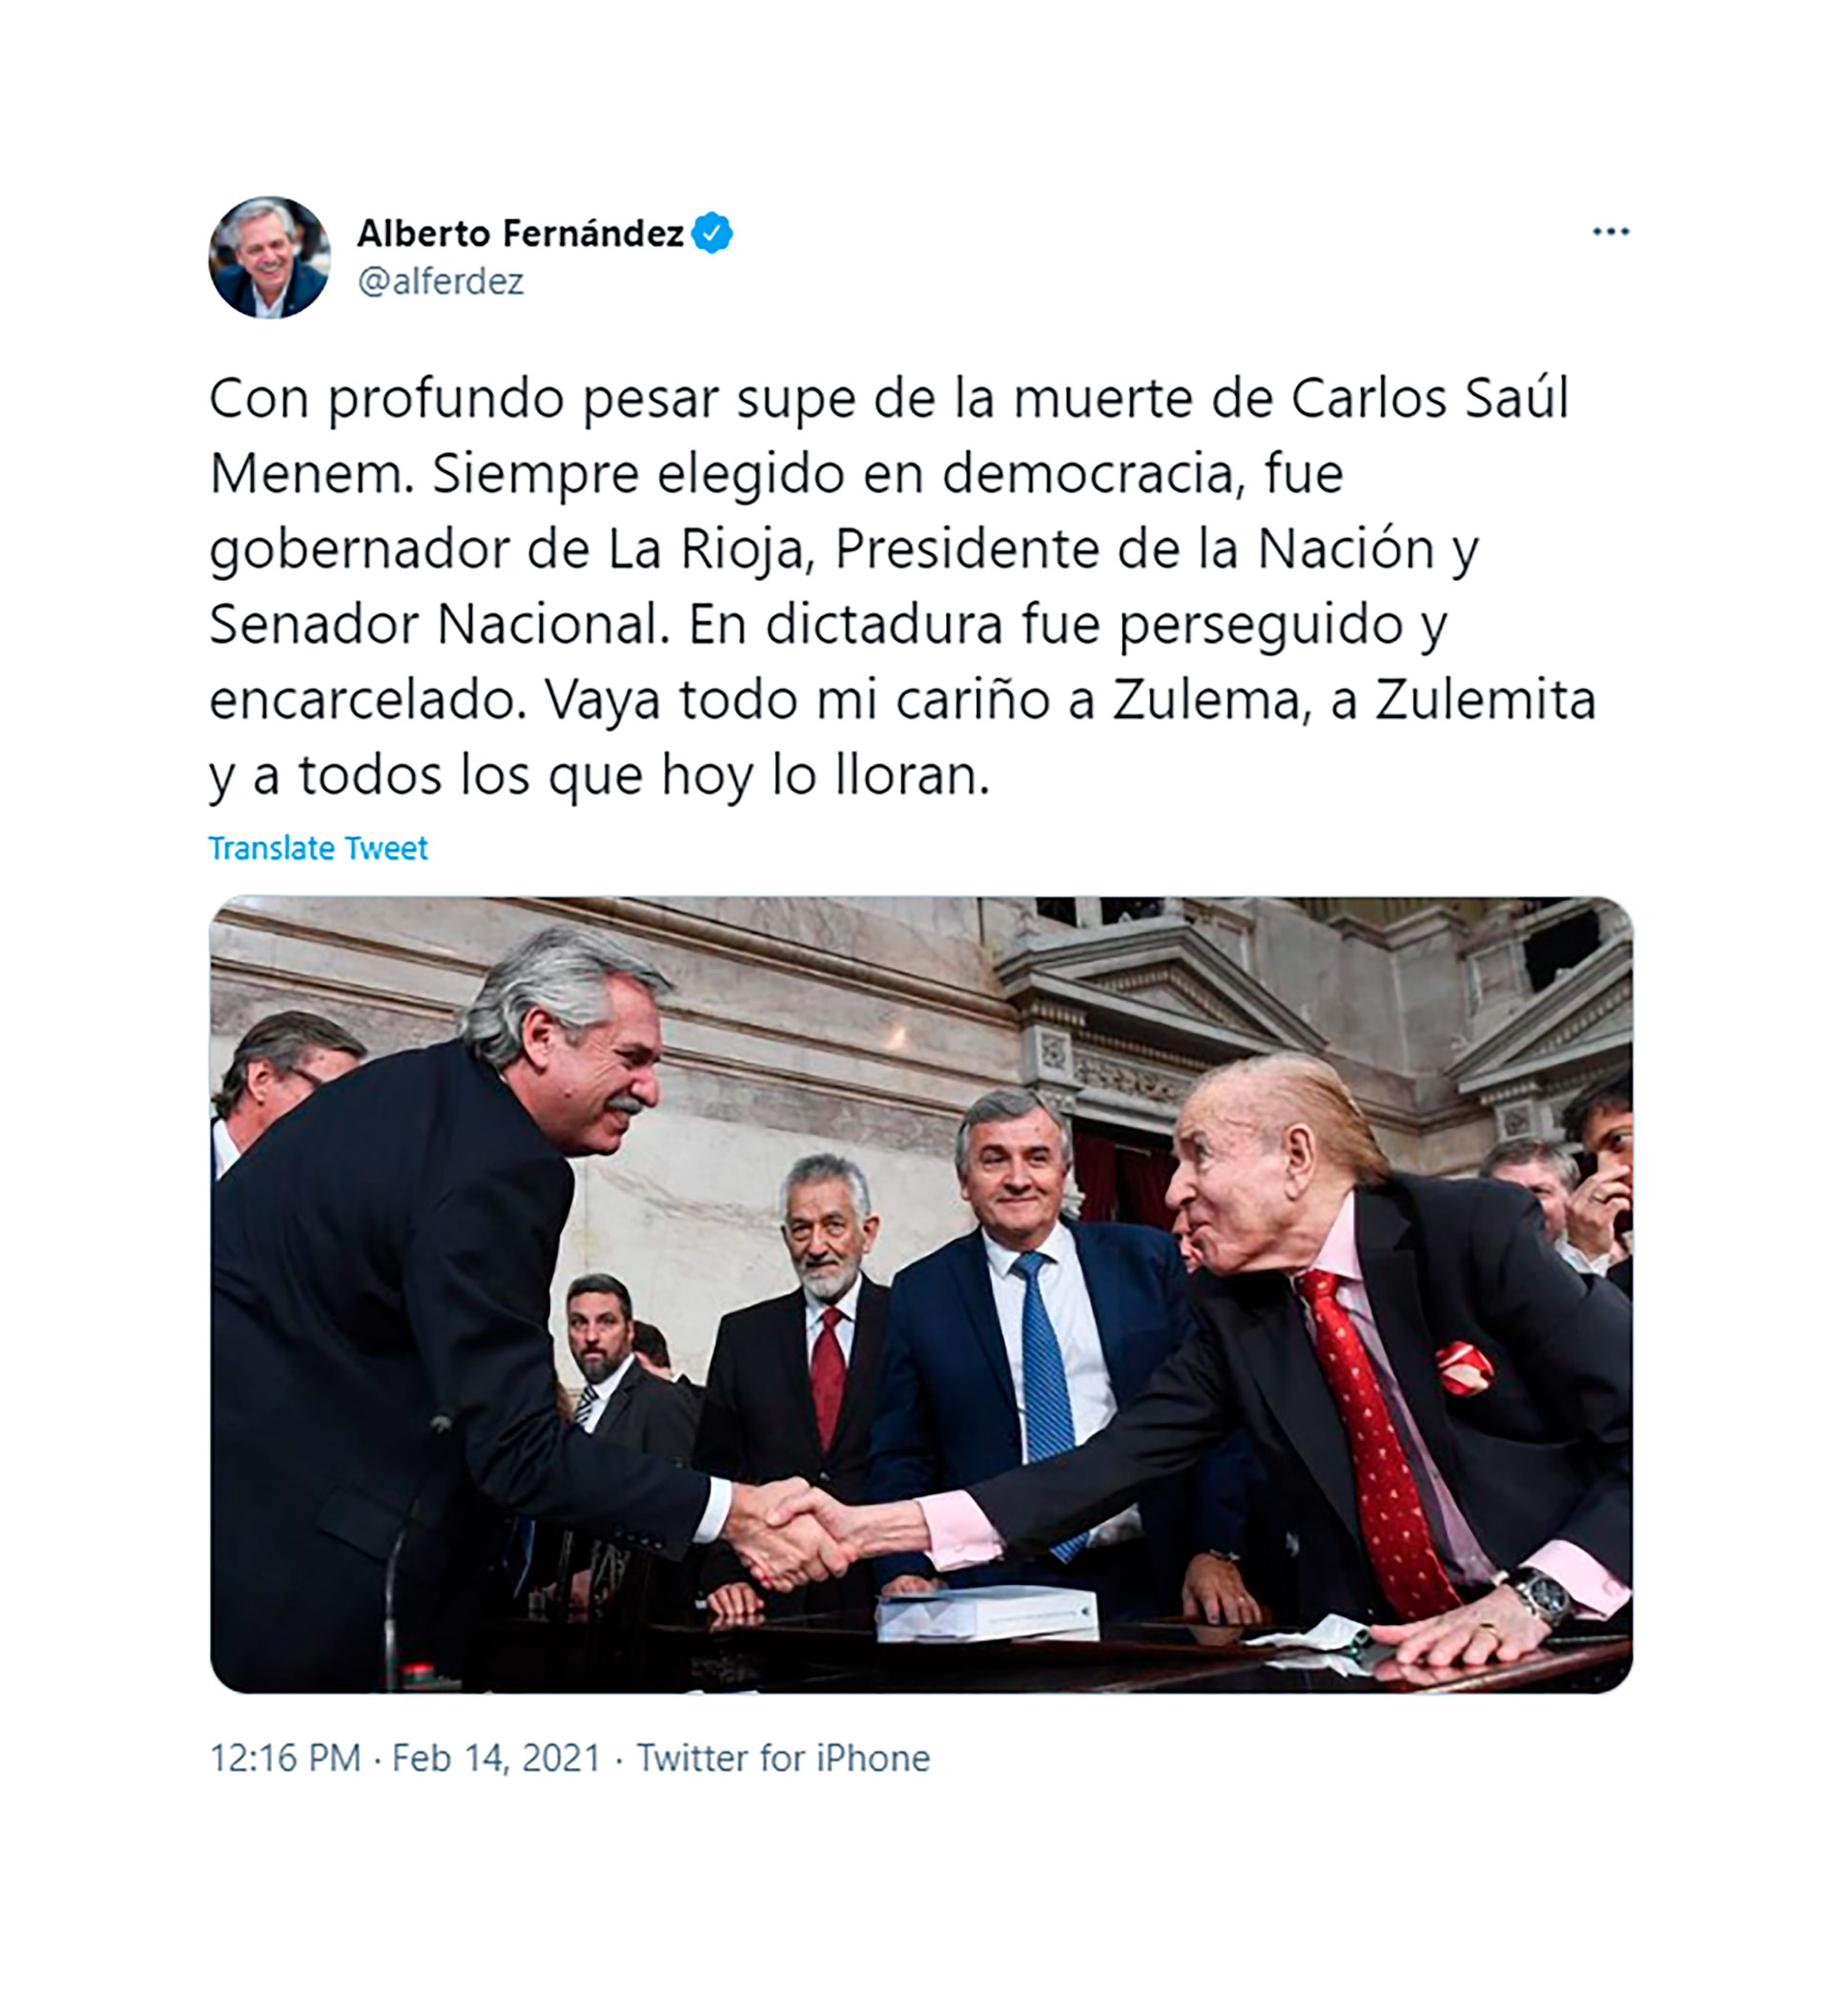 El mensaje del presidente Alberto Fernández